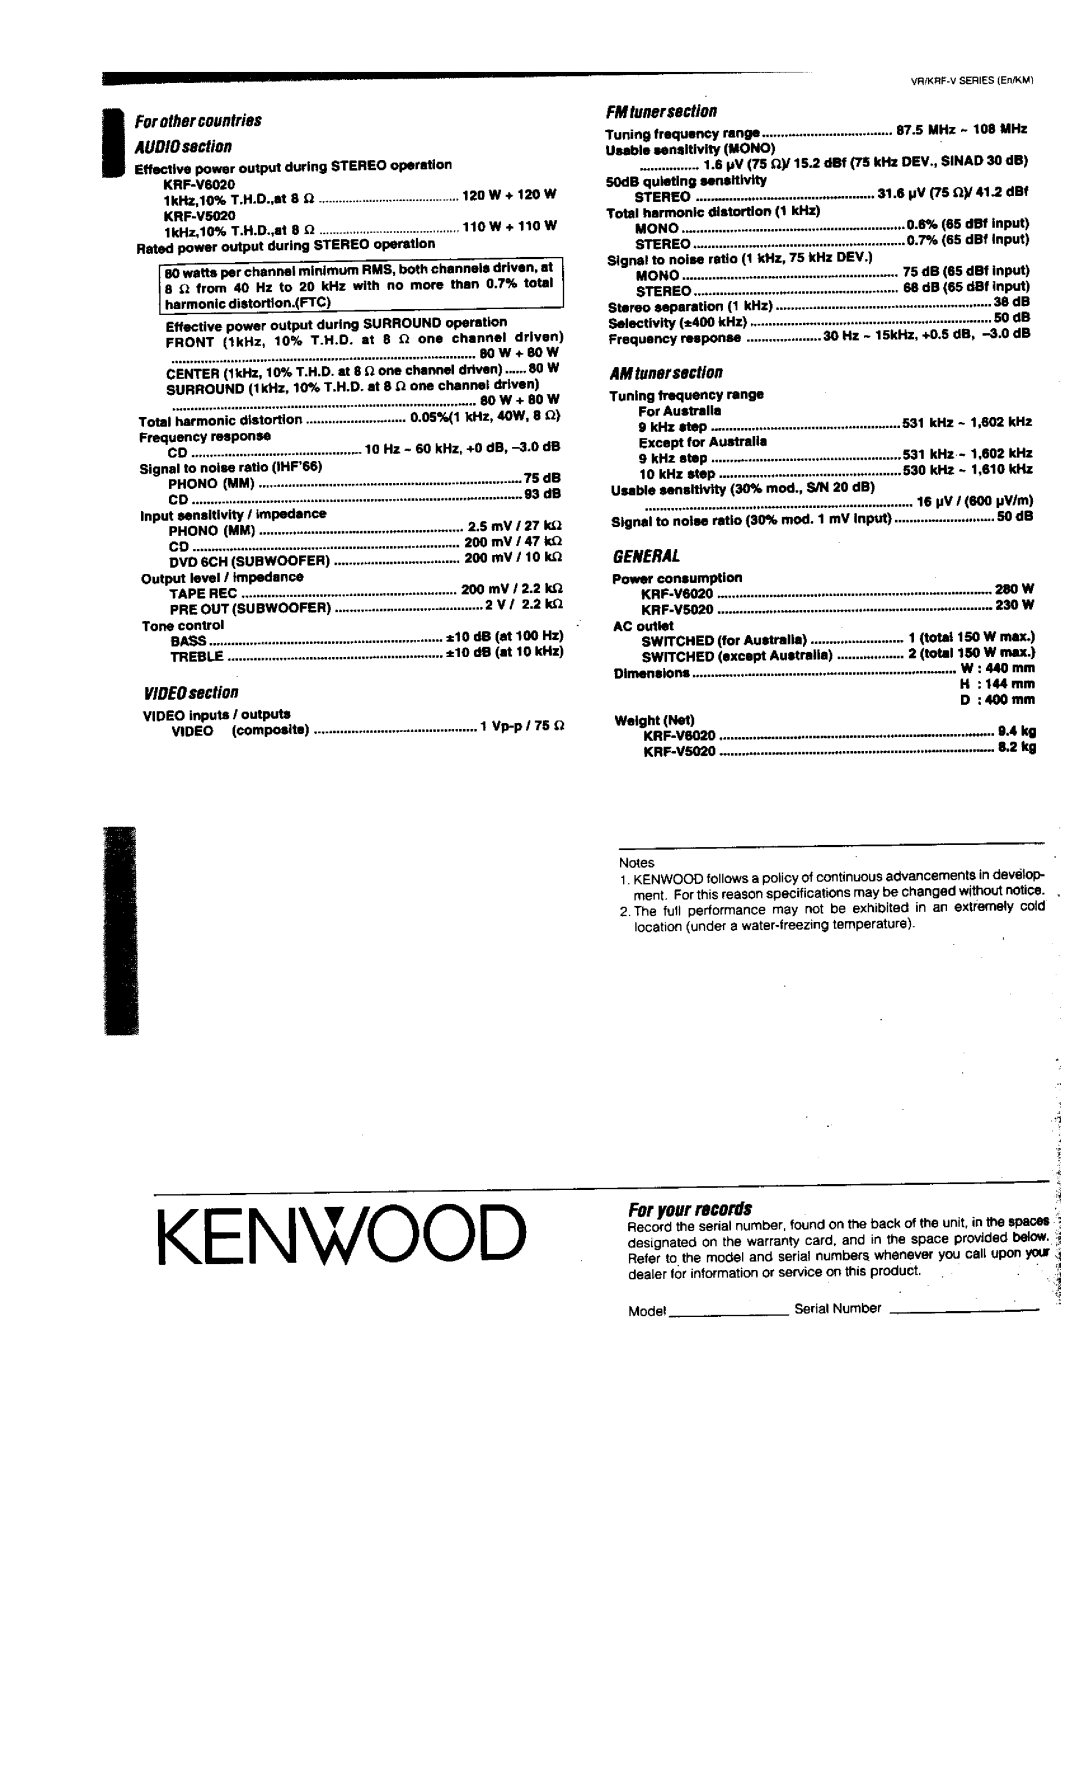 Kenwood KRF-V5020, VR-306, VR-305, VR-355, KRF-V6020 manual 